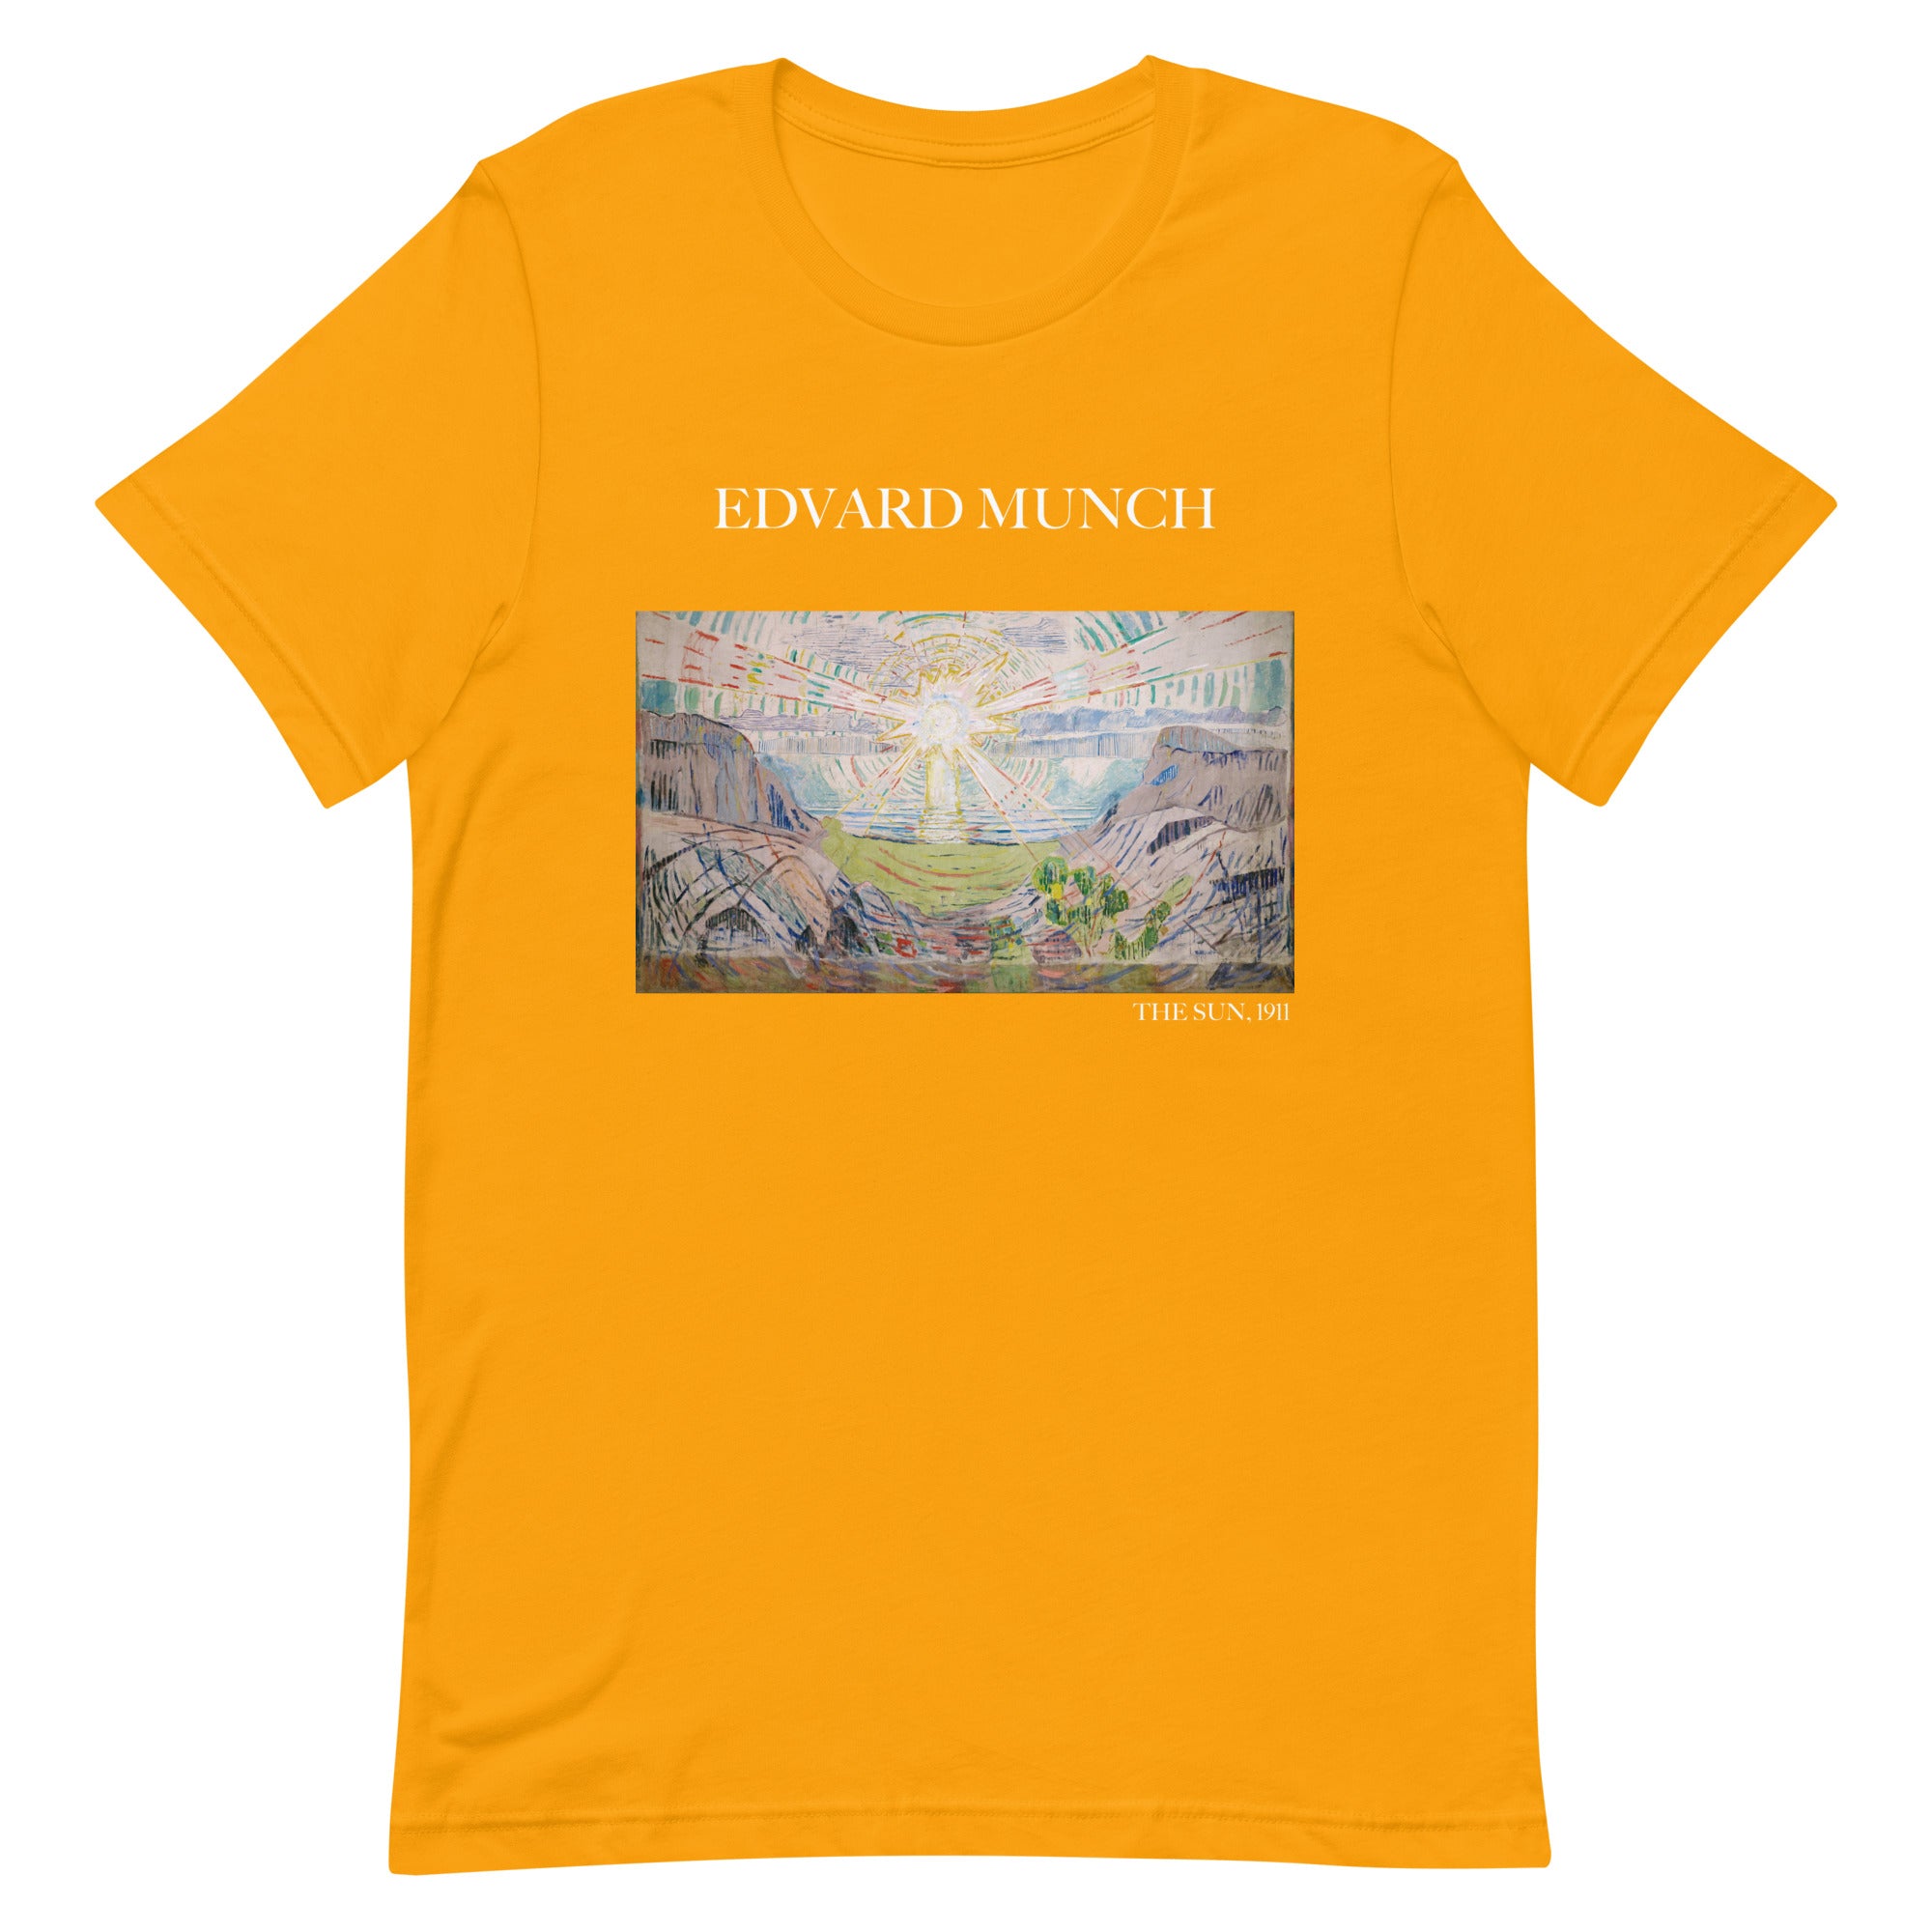 T-Shirt mit berühmtem Gemälde „Die Sonne“ von Edvard Munch | Unisex-T-Shirt im klassischen Kunststil